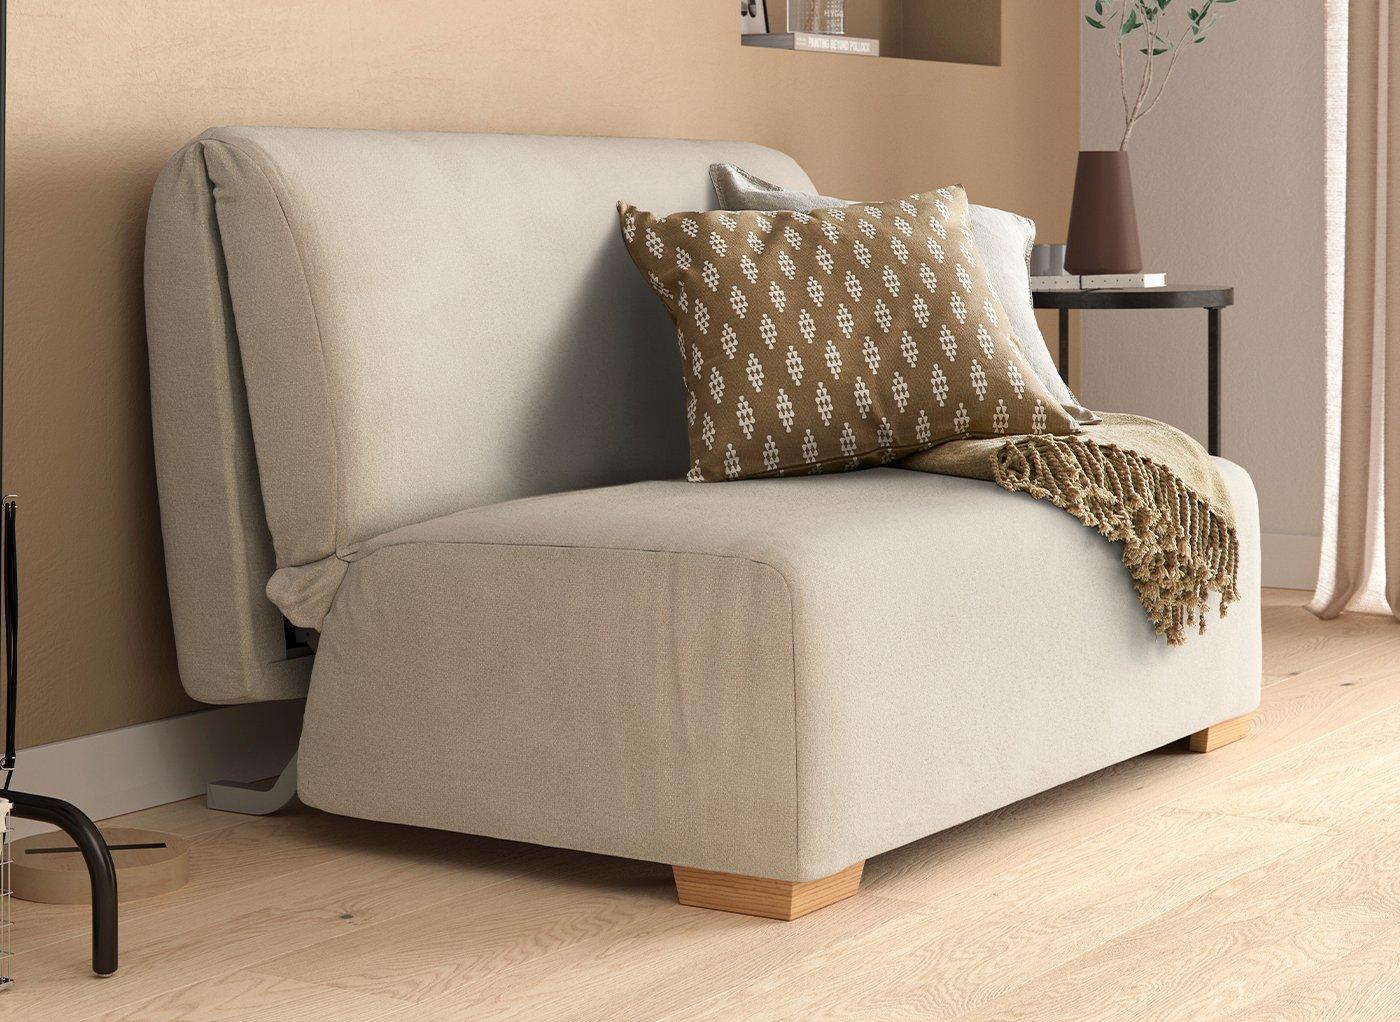 A-frame sofa beds